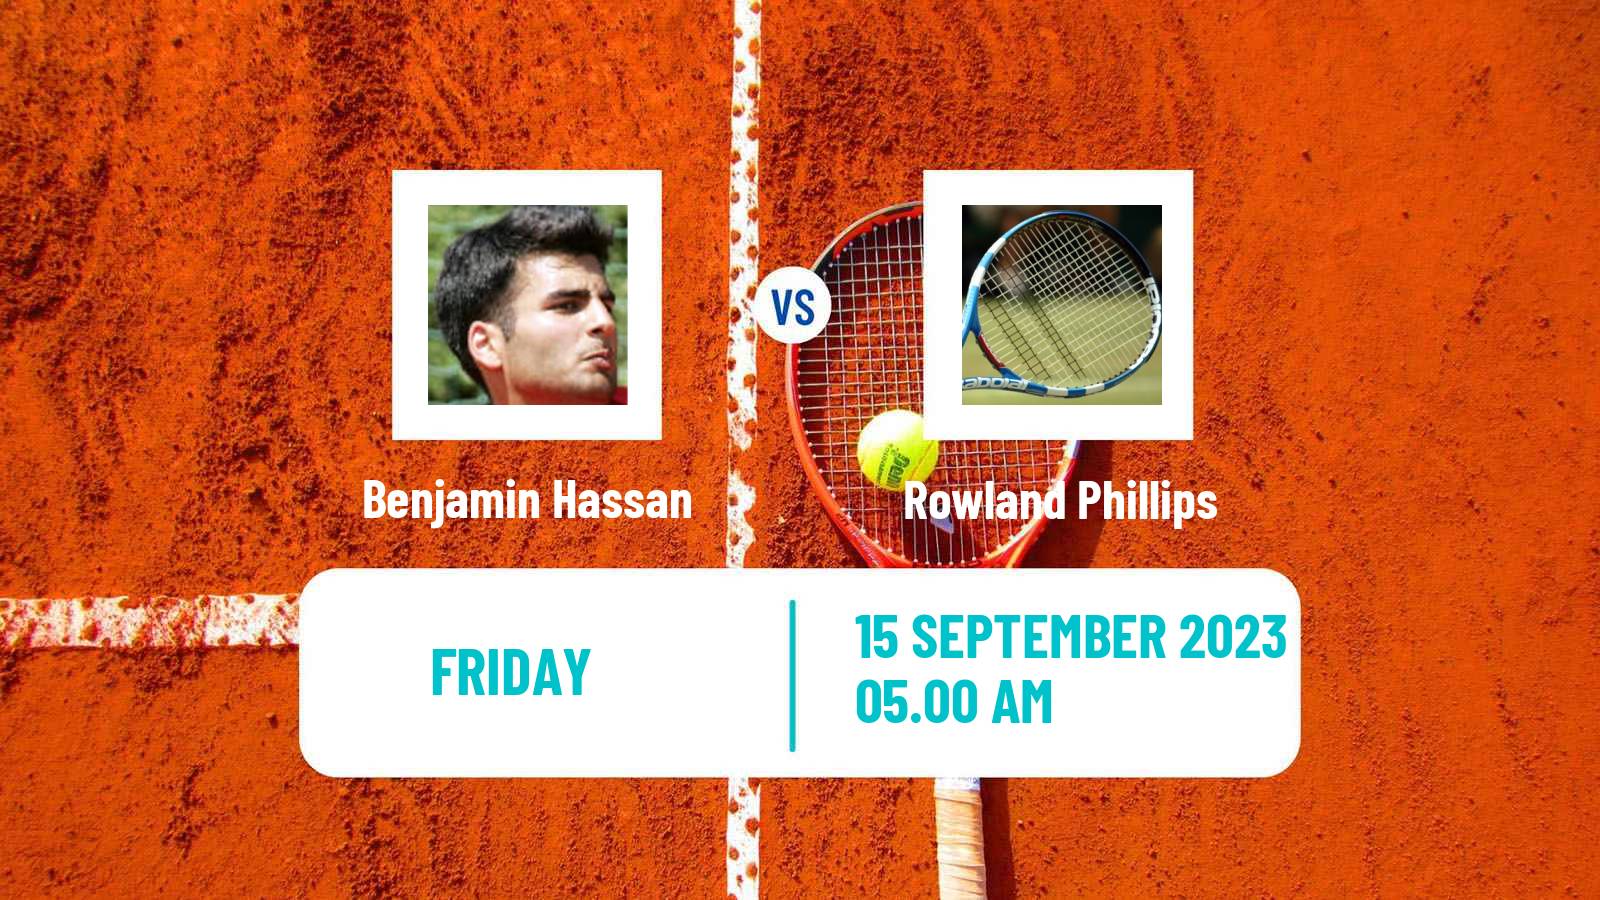 Tennis Davis Cup World Group II Benjamin Hassan - Rowland Phillips